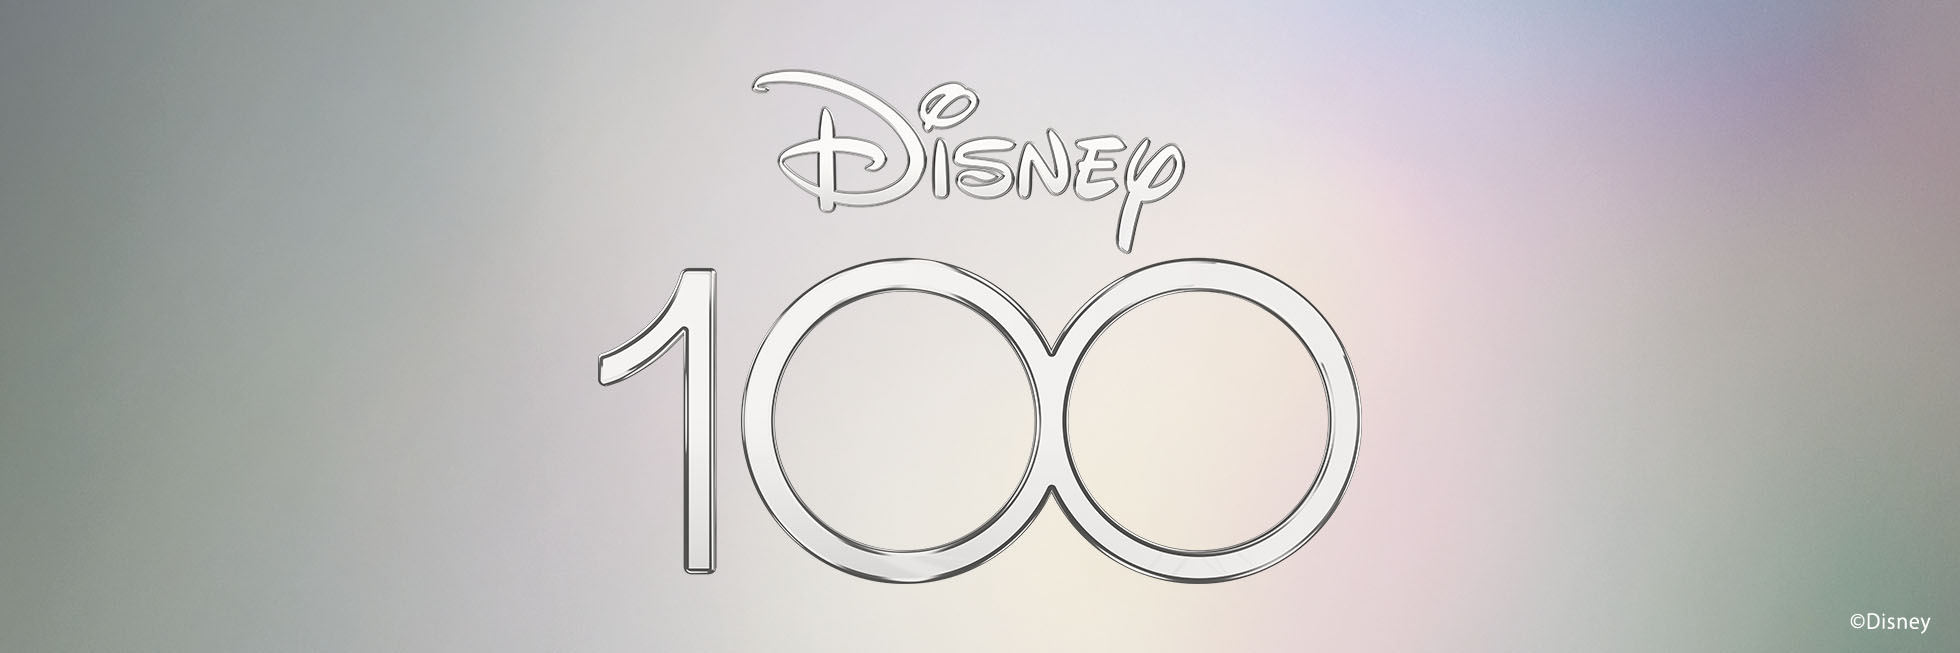 Disney 100 YEARS OF WONDER